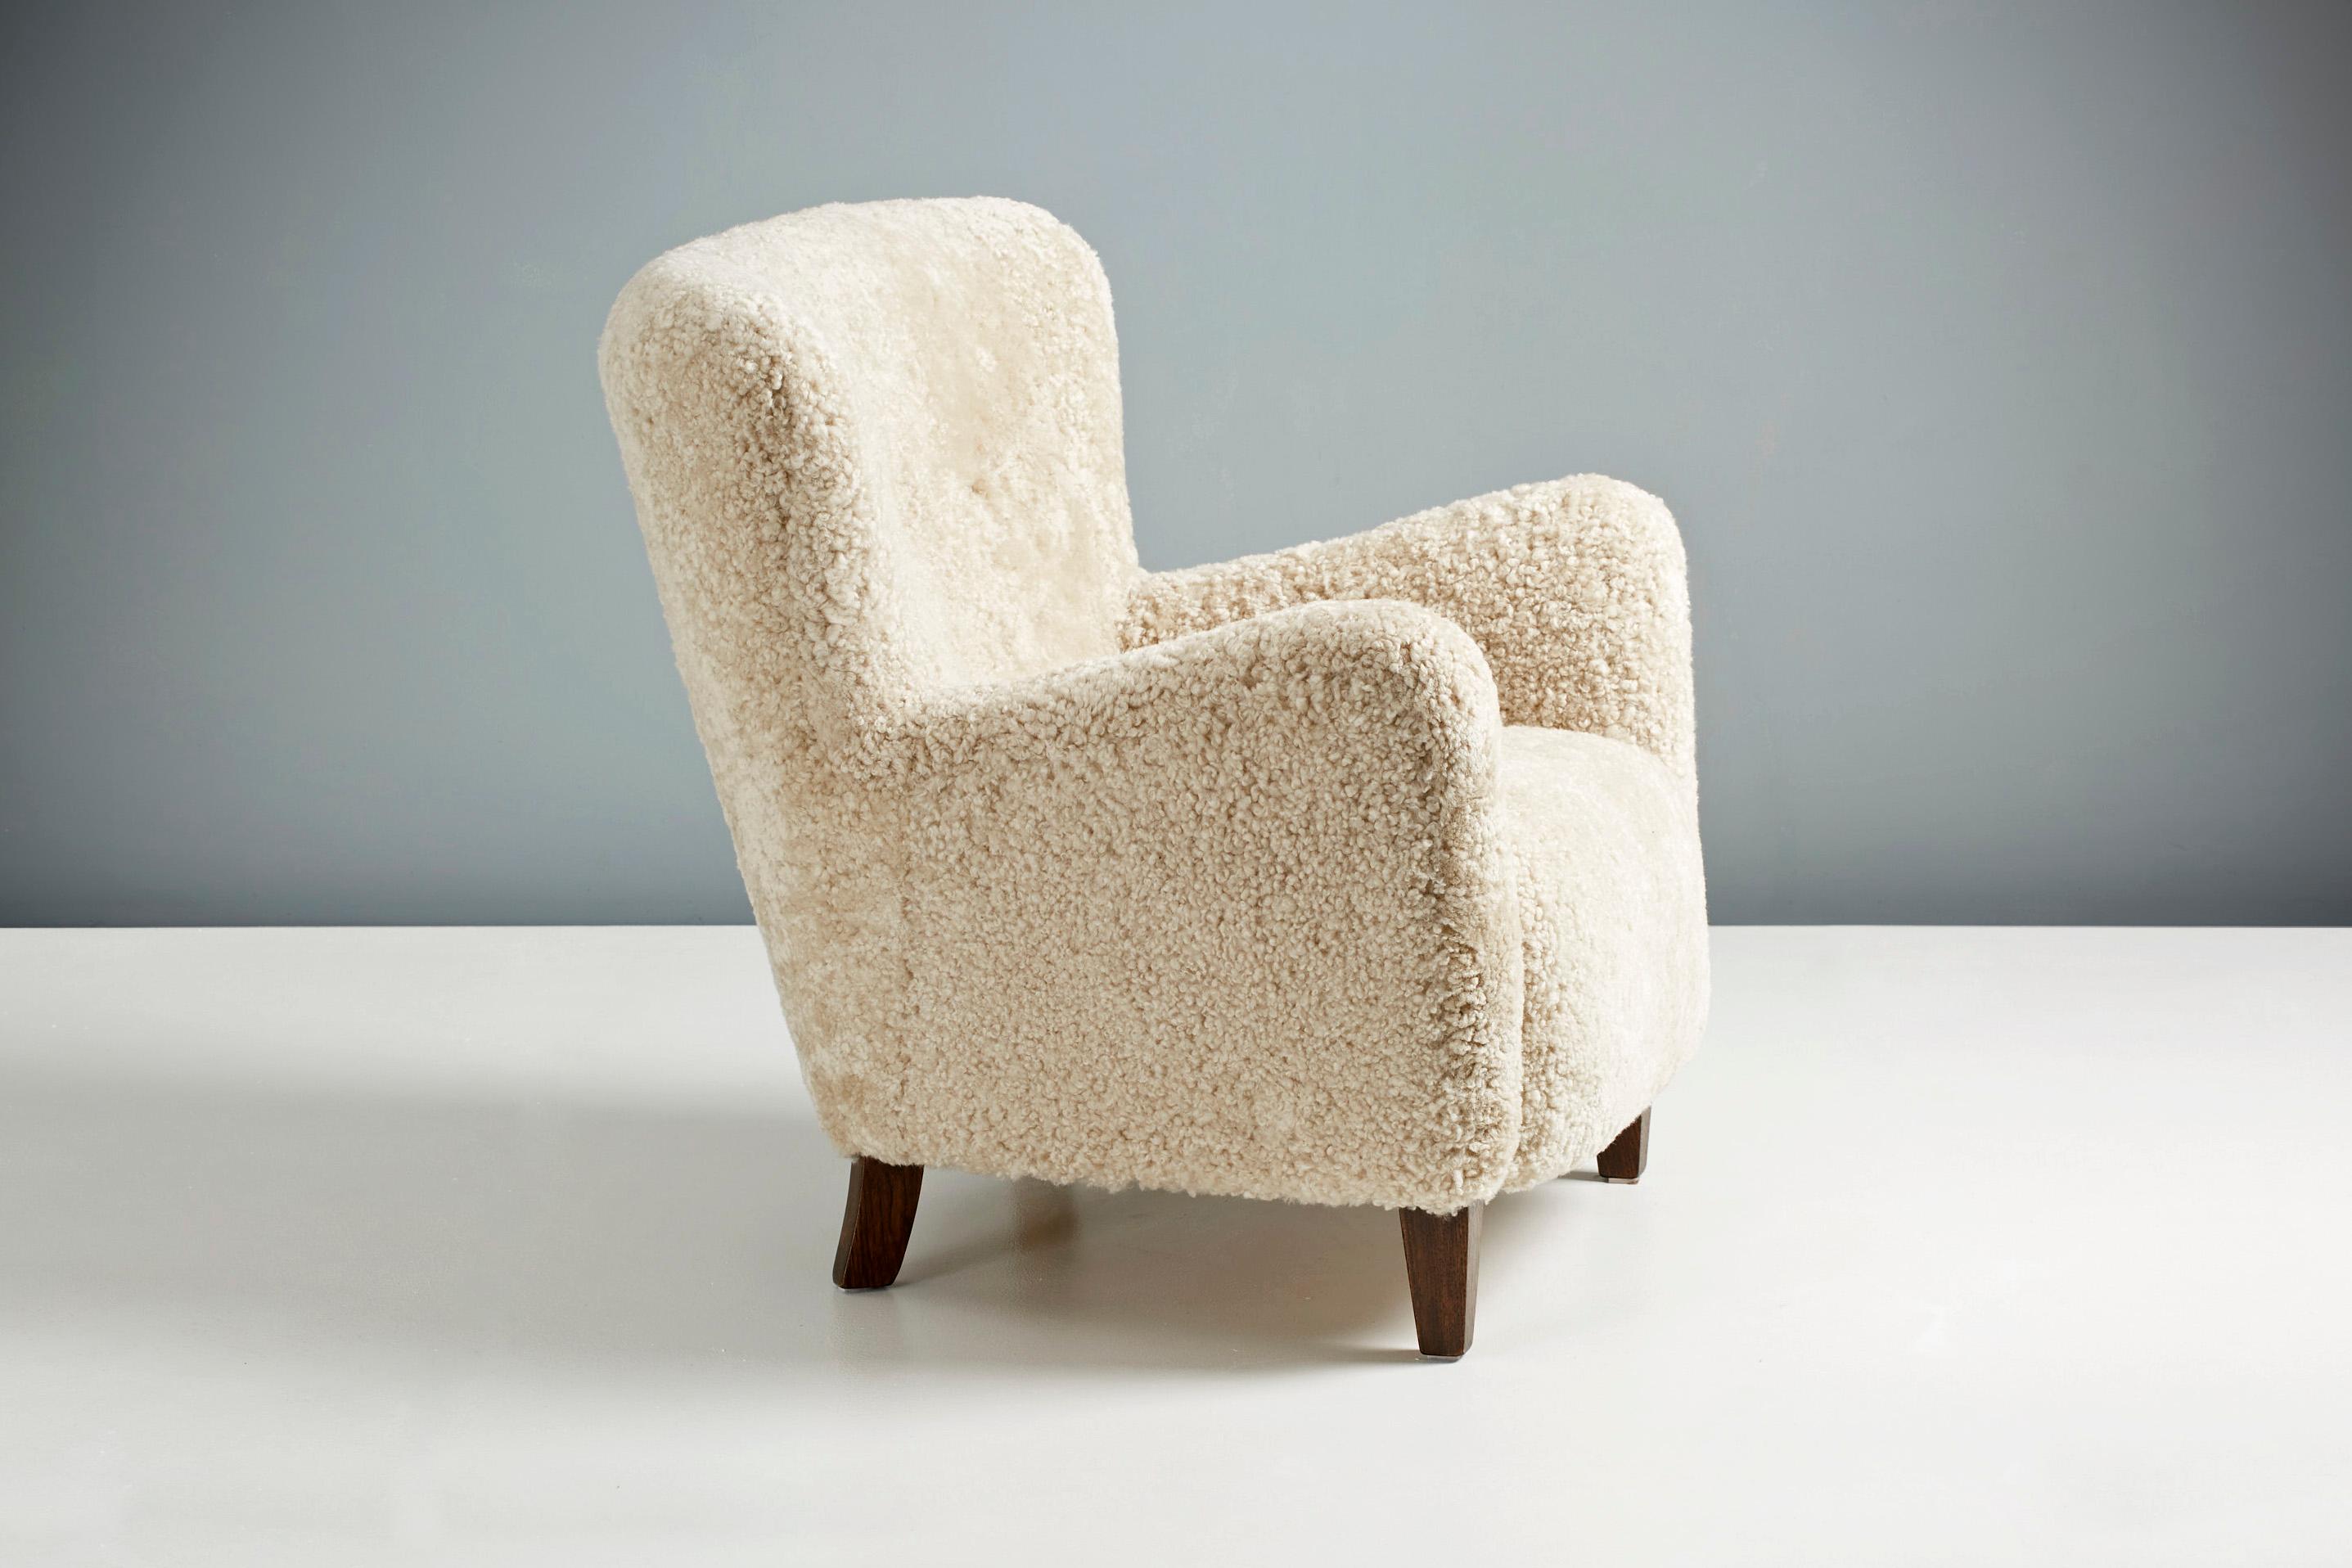 Dagmar design

Fauteuil Ryo

Un fauteuil sur mesure développé et produit dans nos ateliers à Londres en utilisant des matériaux de la plus haute qualité. Cet exemplaire est garni d'une luxueuse peau de mouton australienne 